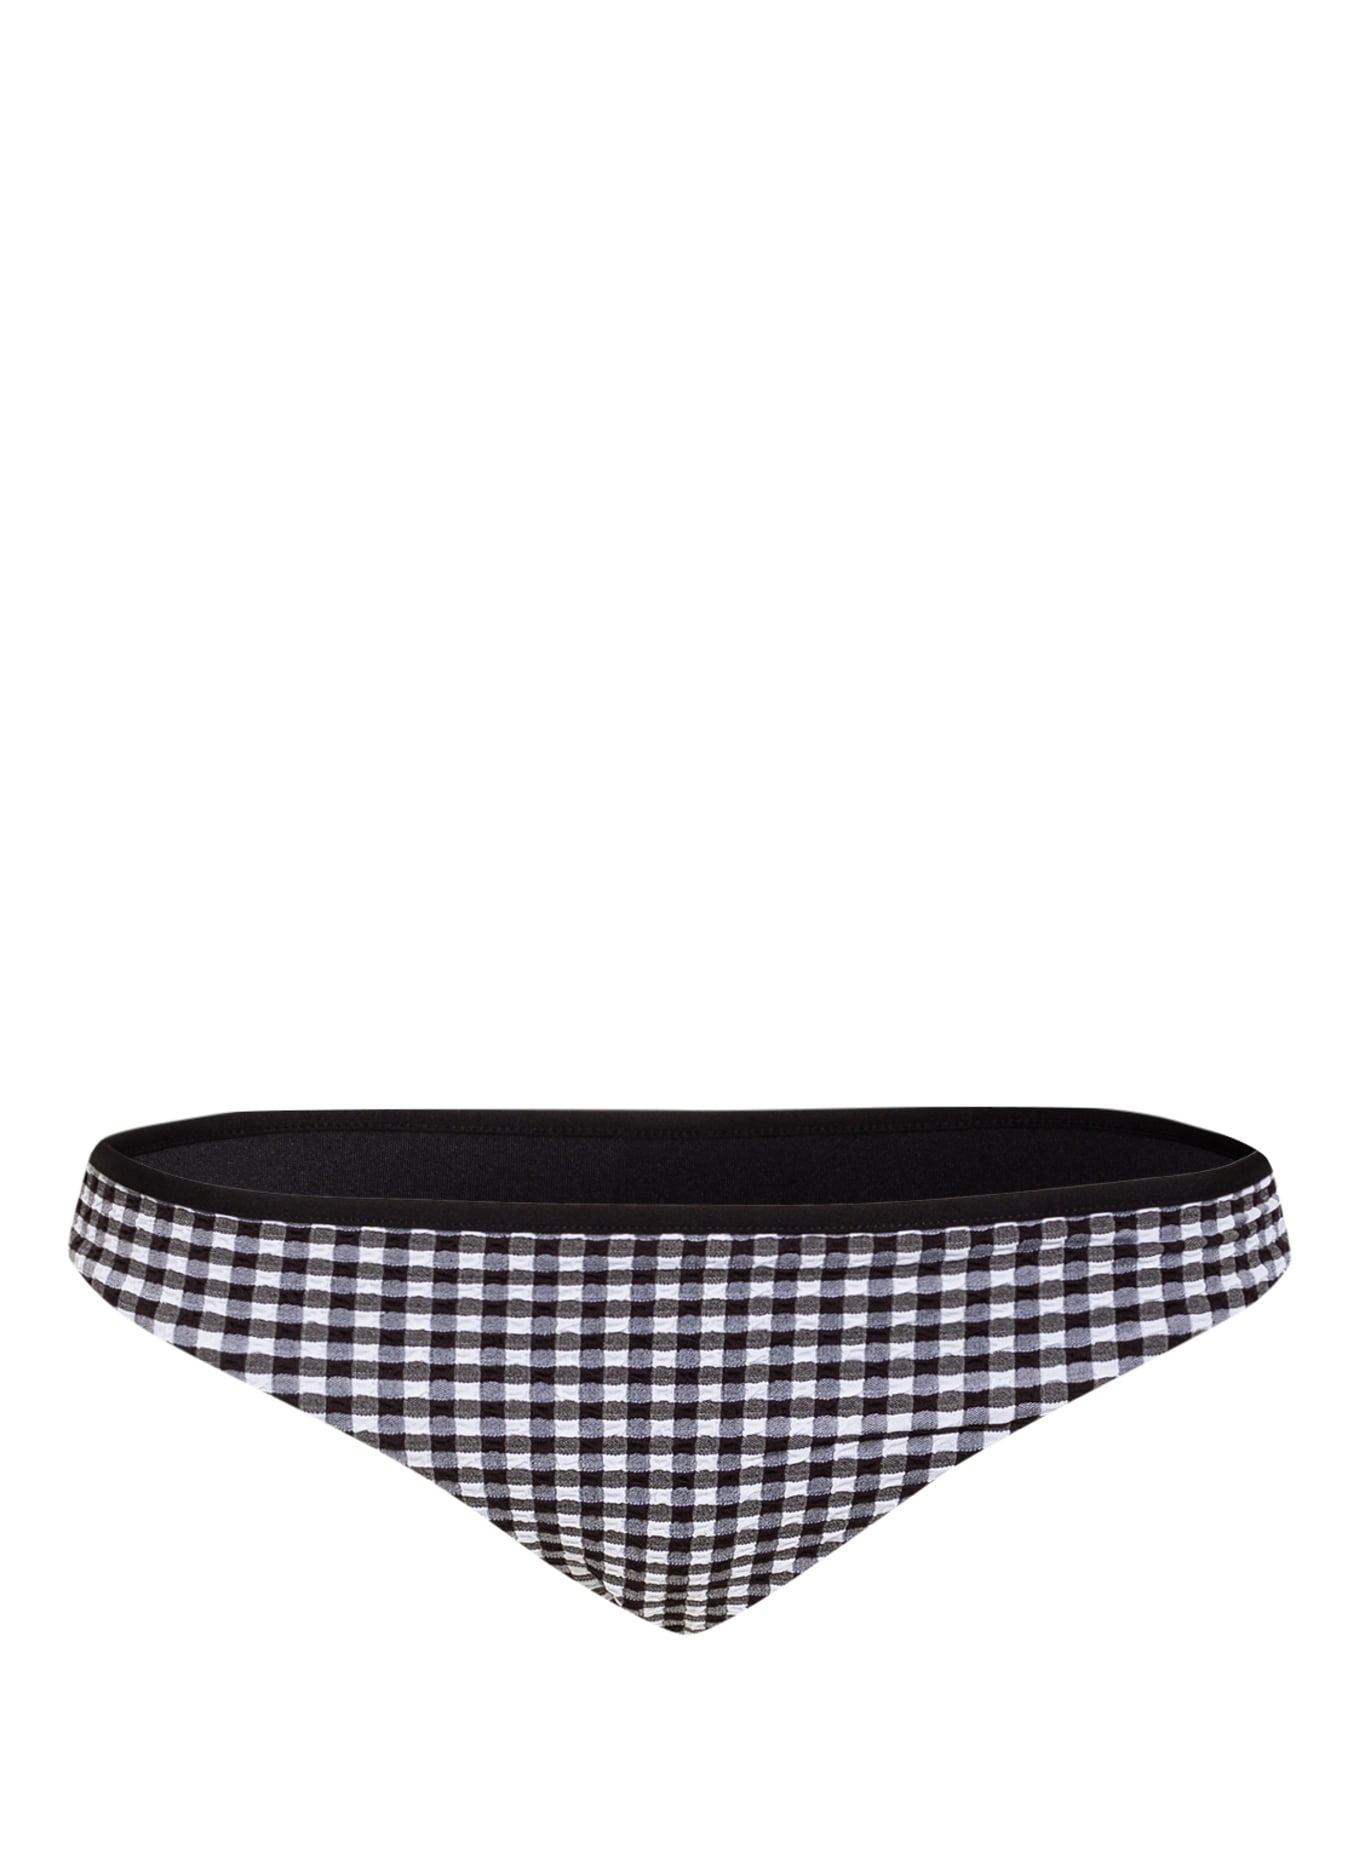 SEAFOLLY Bikini bottoms CHECK IN, Color: BLACK/ WHITE (Image 1)